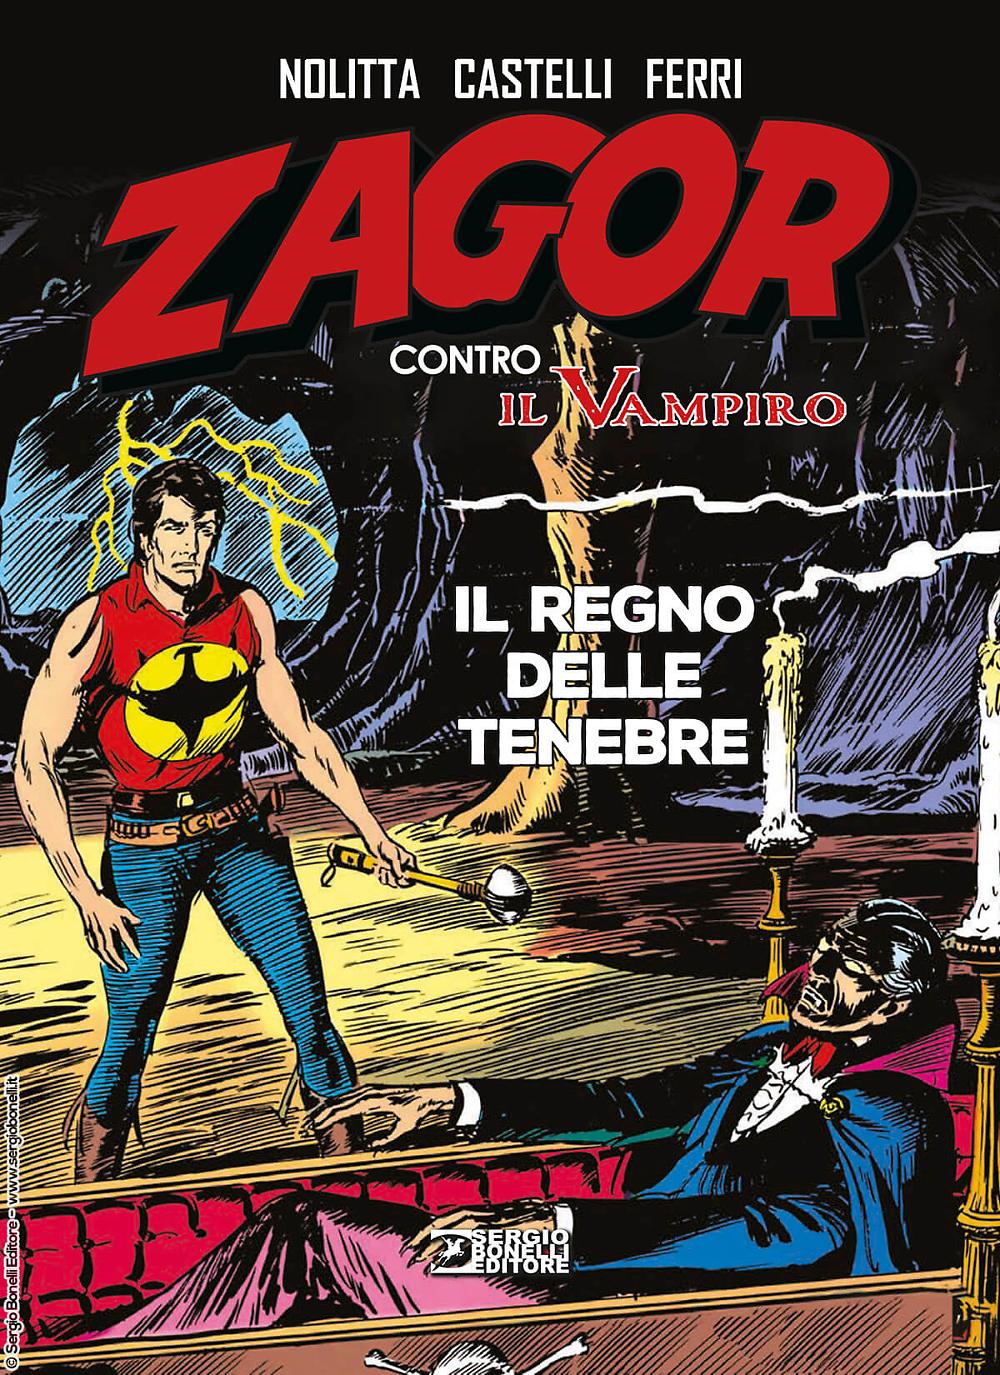 Sergio Bonelli Editore presents “ZAGOR AGAINST THE VAMPIRE. THE KINGDOM OF DARKNESS”